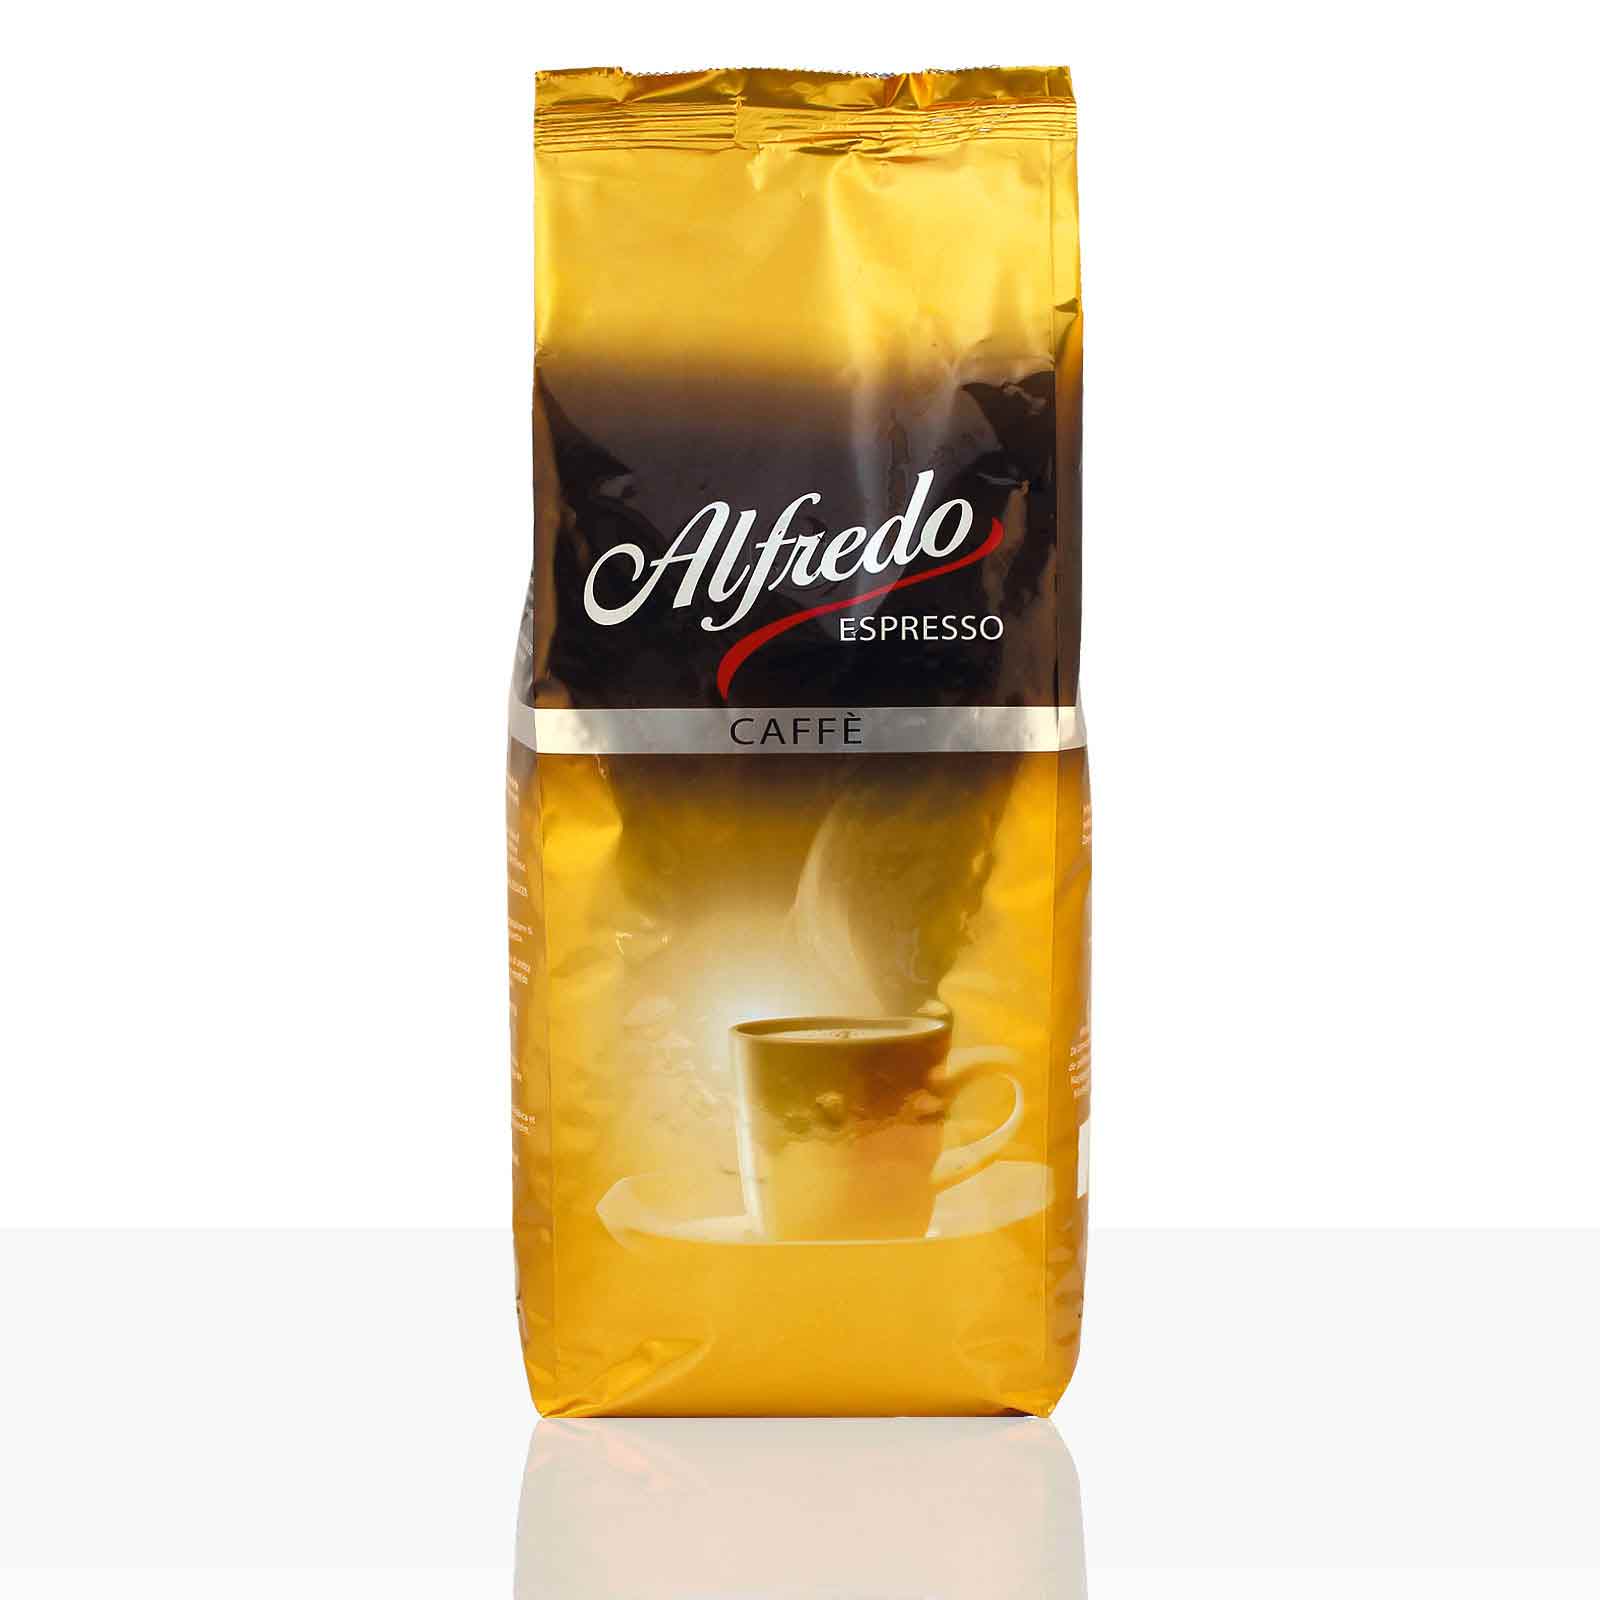 (14,87€/1kg) Darboven Alfredo Caffè Creme - 12 x 1kg ganze Kaffee-Bohne Cafe